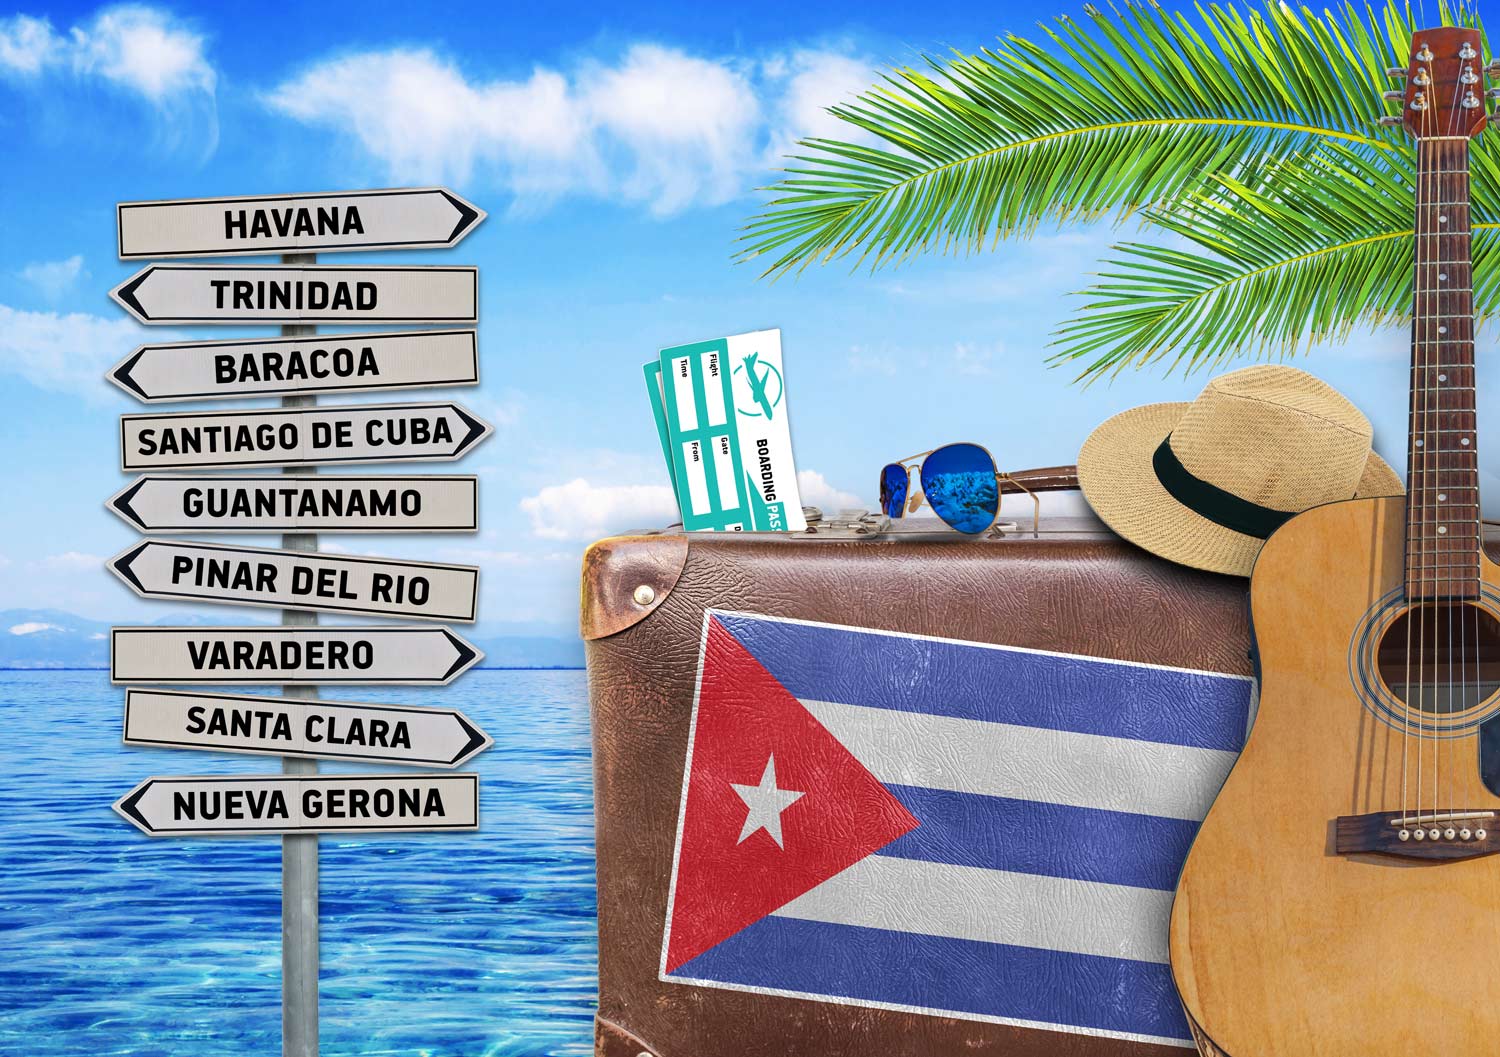 ¿Estás planeando viajar a Cuba? Aquí te contamos cuál es la mejor época del año para visitar la isla